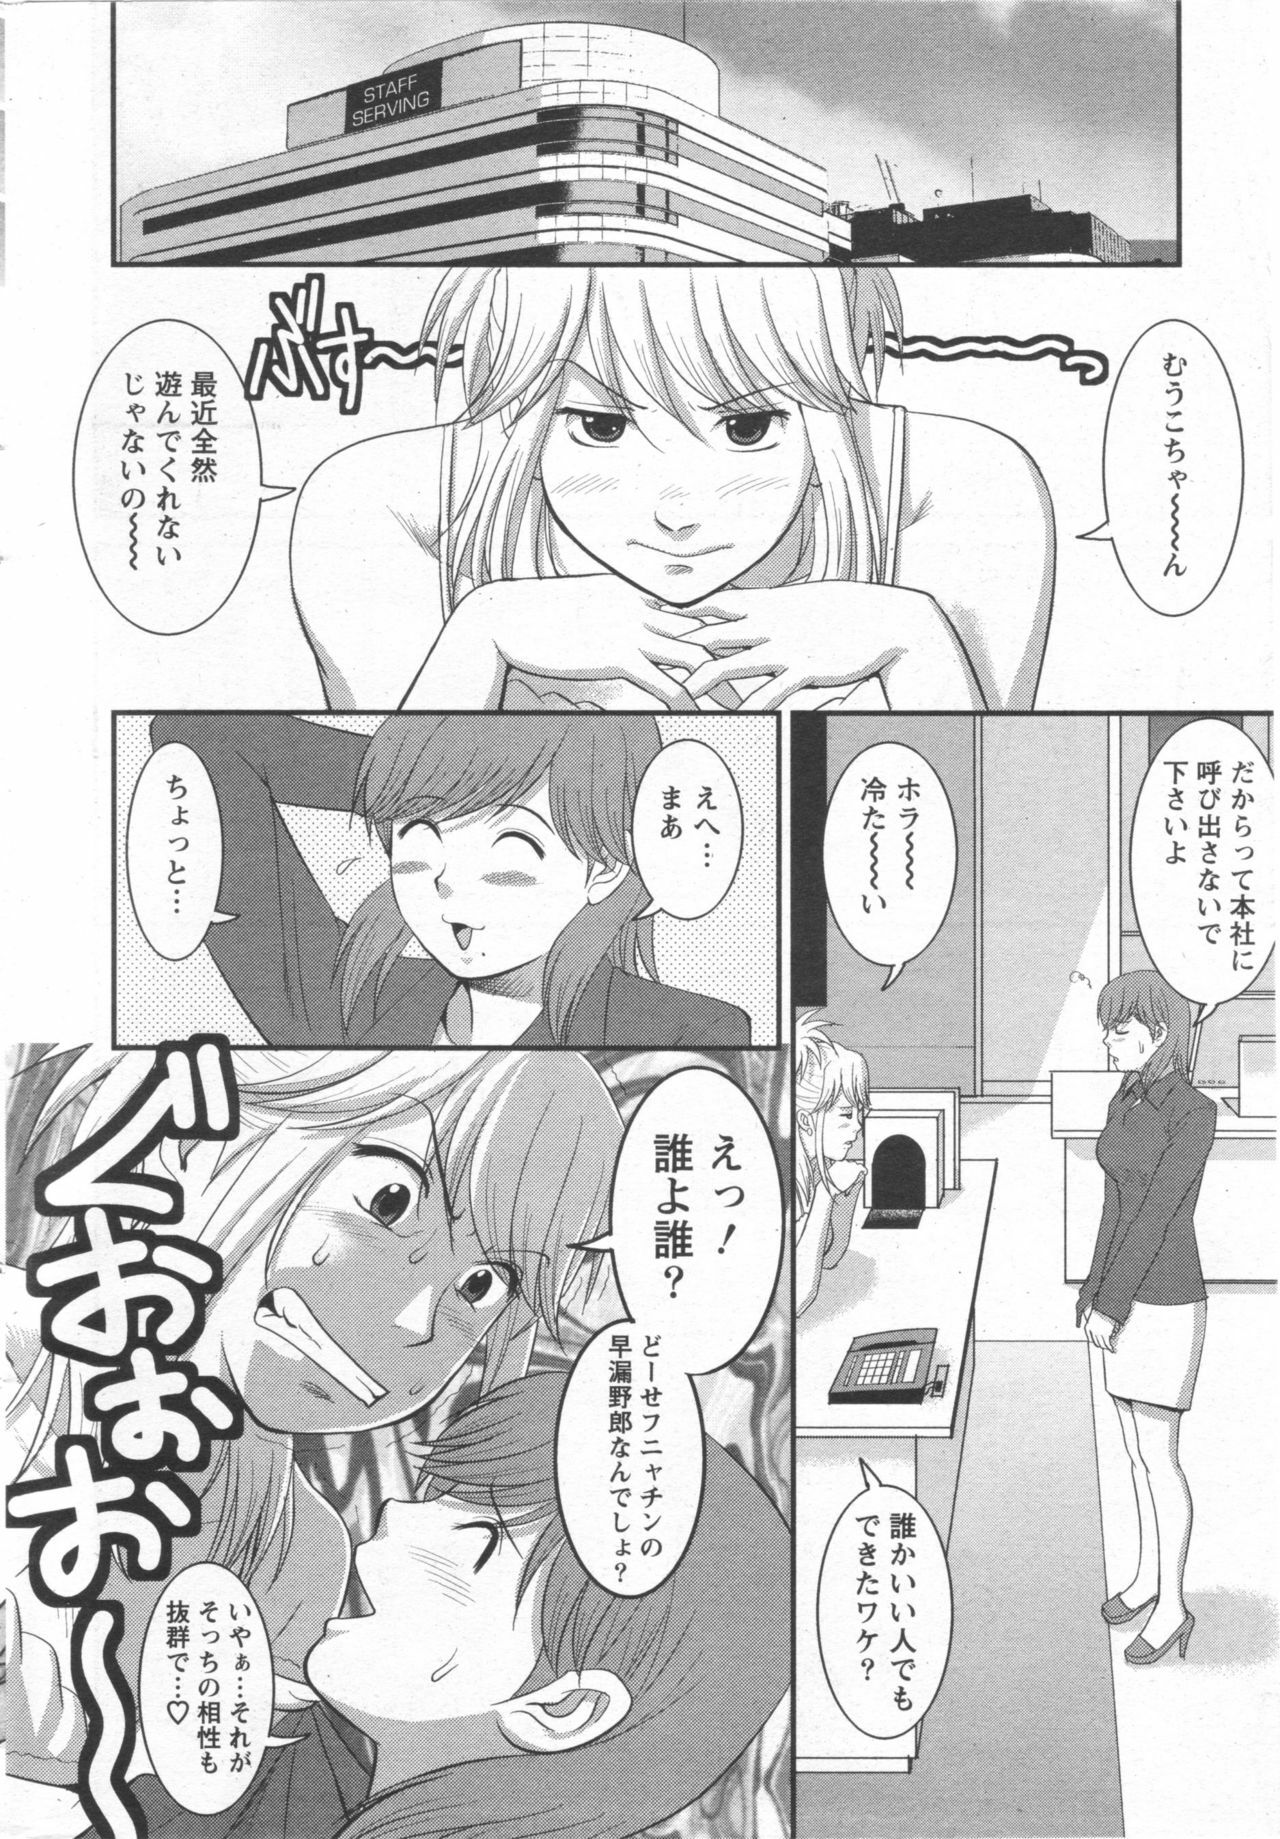 Haken no Muuko-san 10 [Saigado] page 7 full